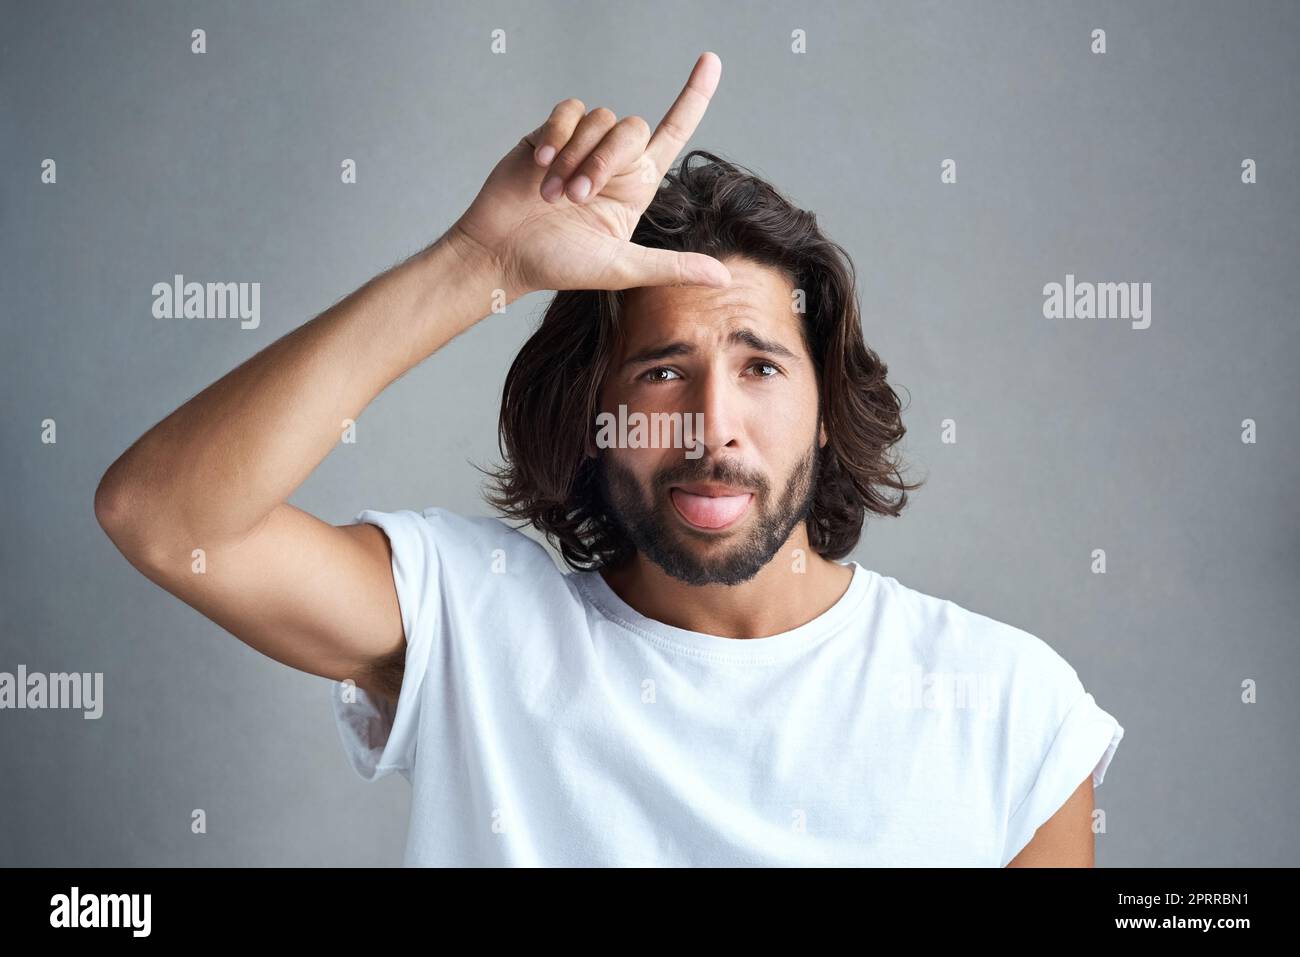 Loser finger immagini e fotografie stock ad alta risoluzione - Alamy